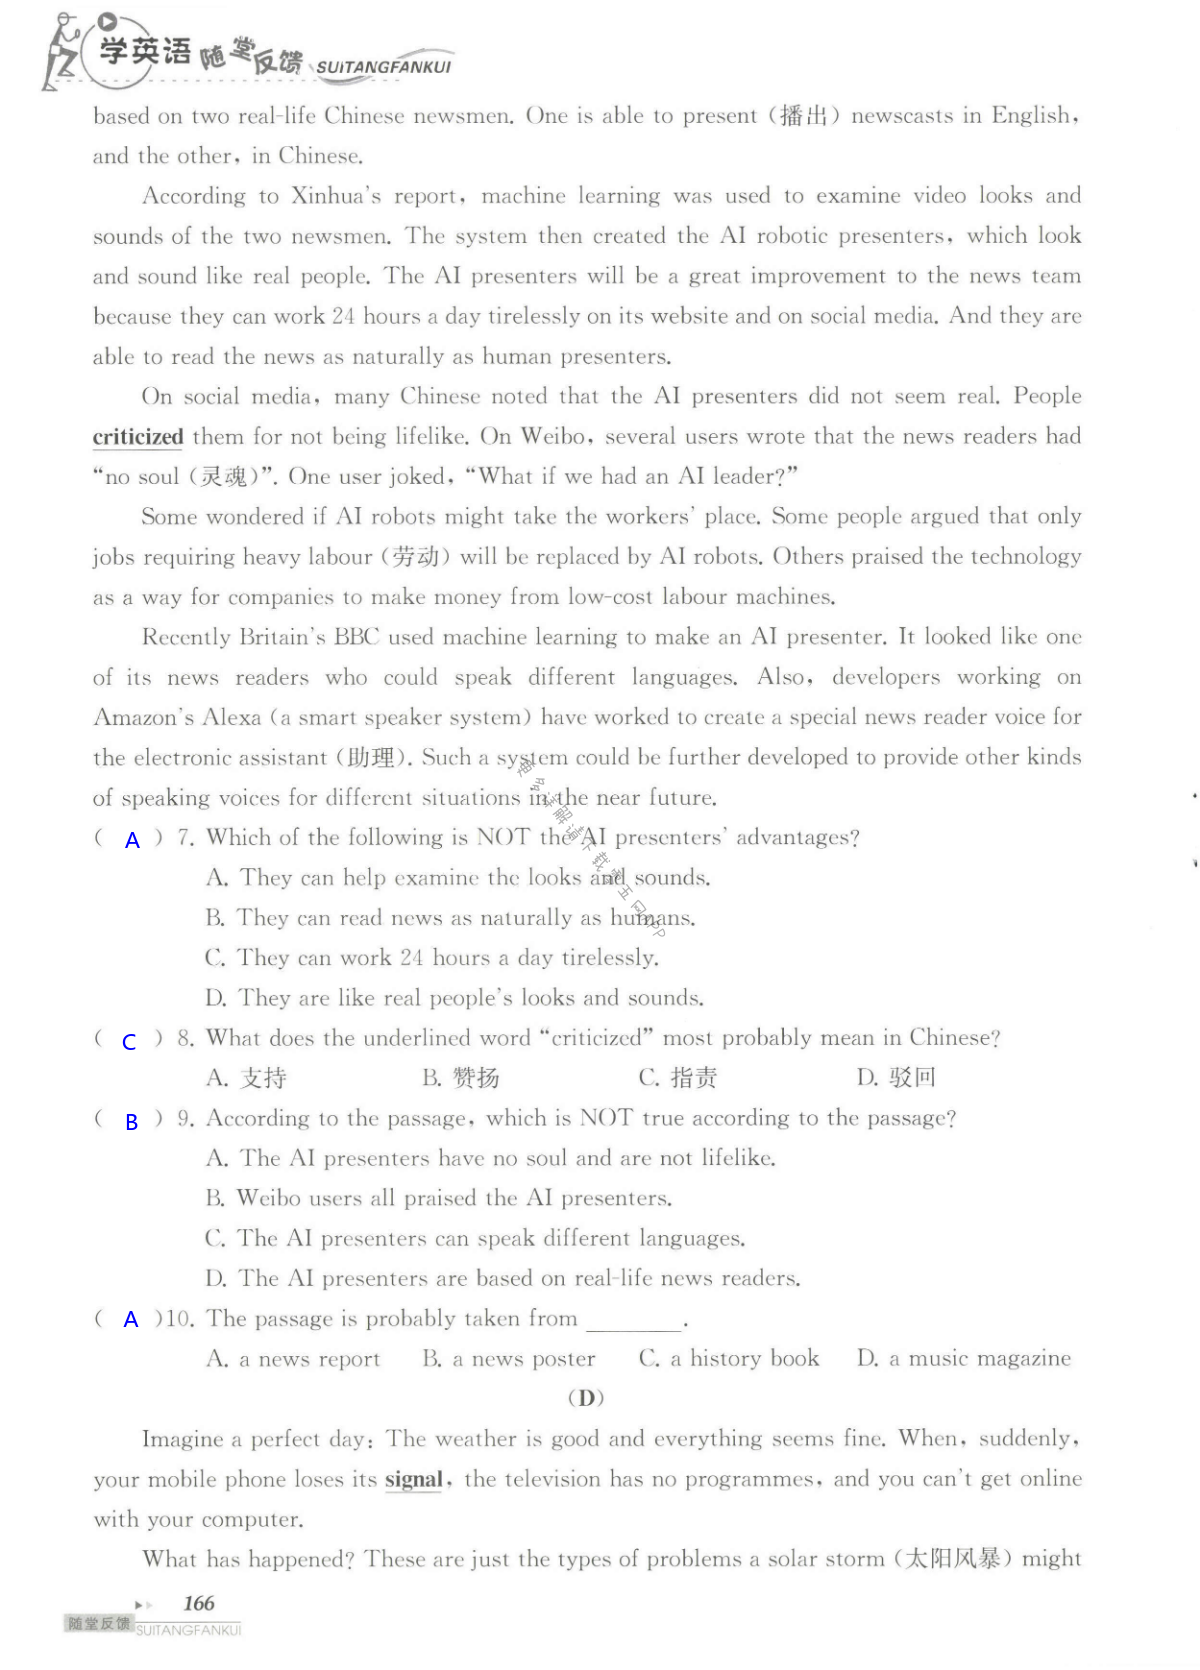 单元综合测试卷 Test for Units 3-4 of 9B - 第166页